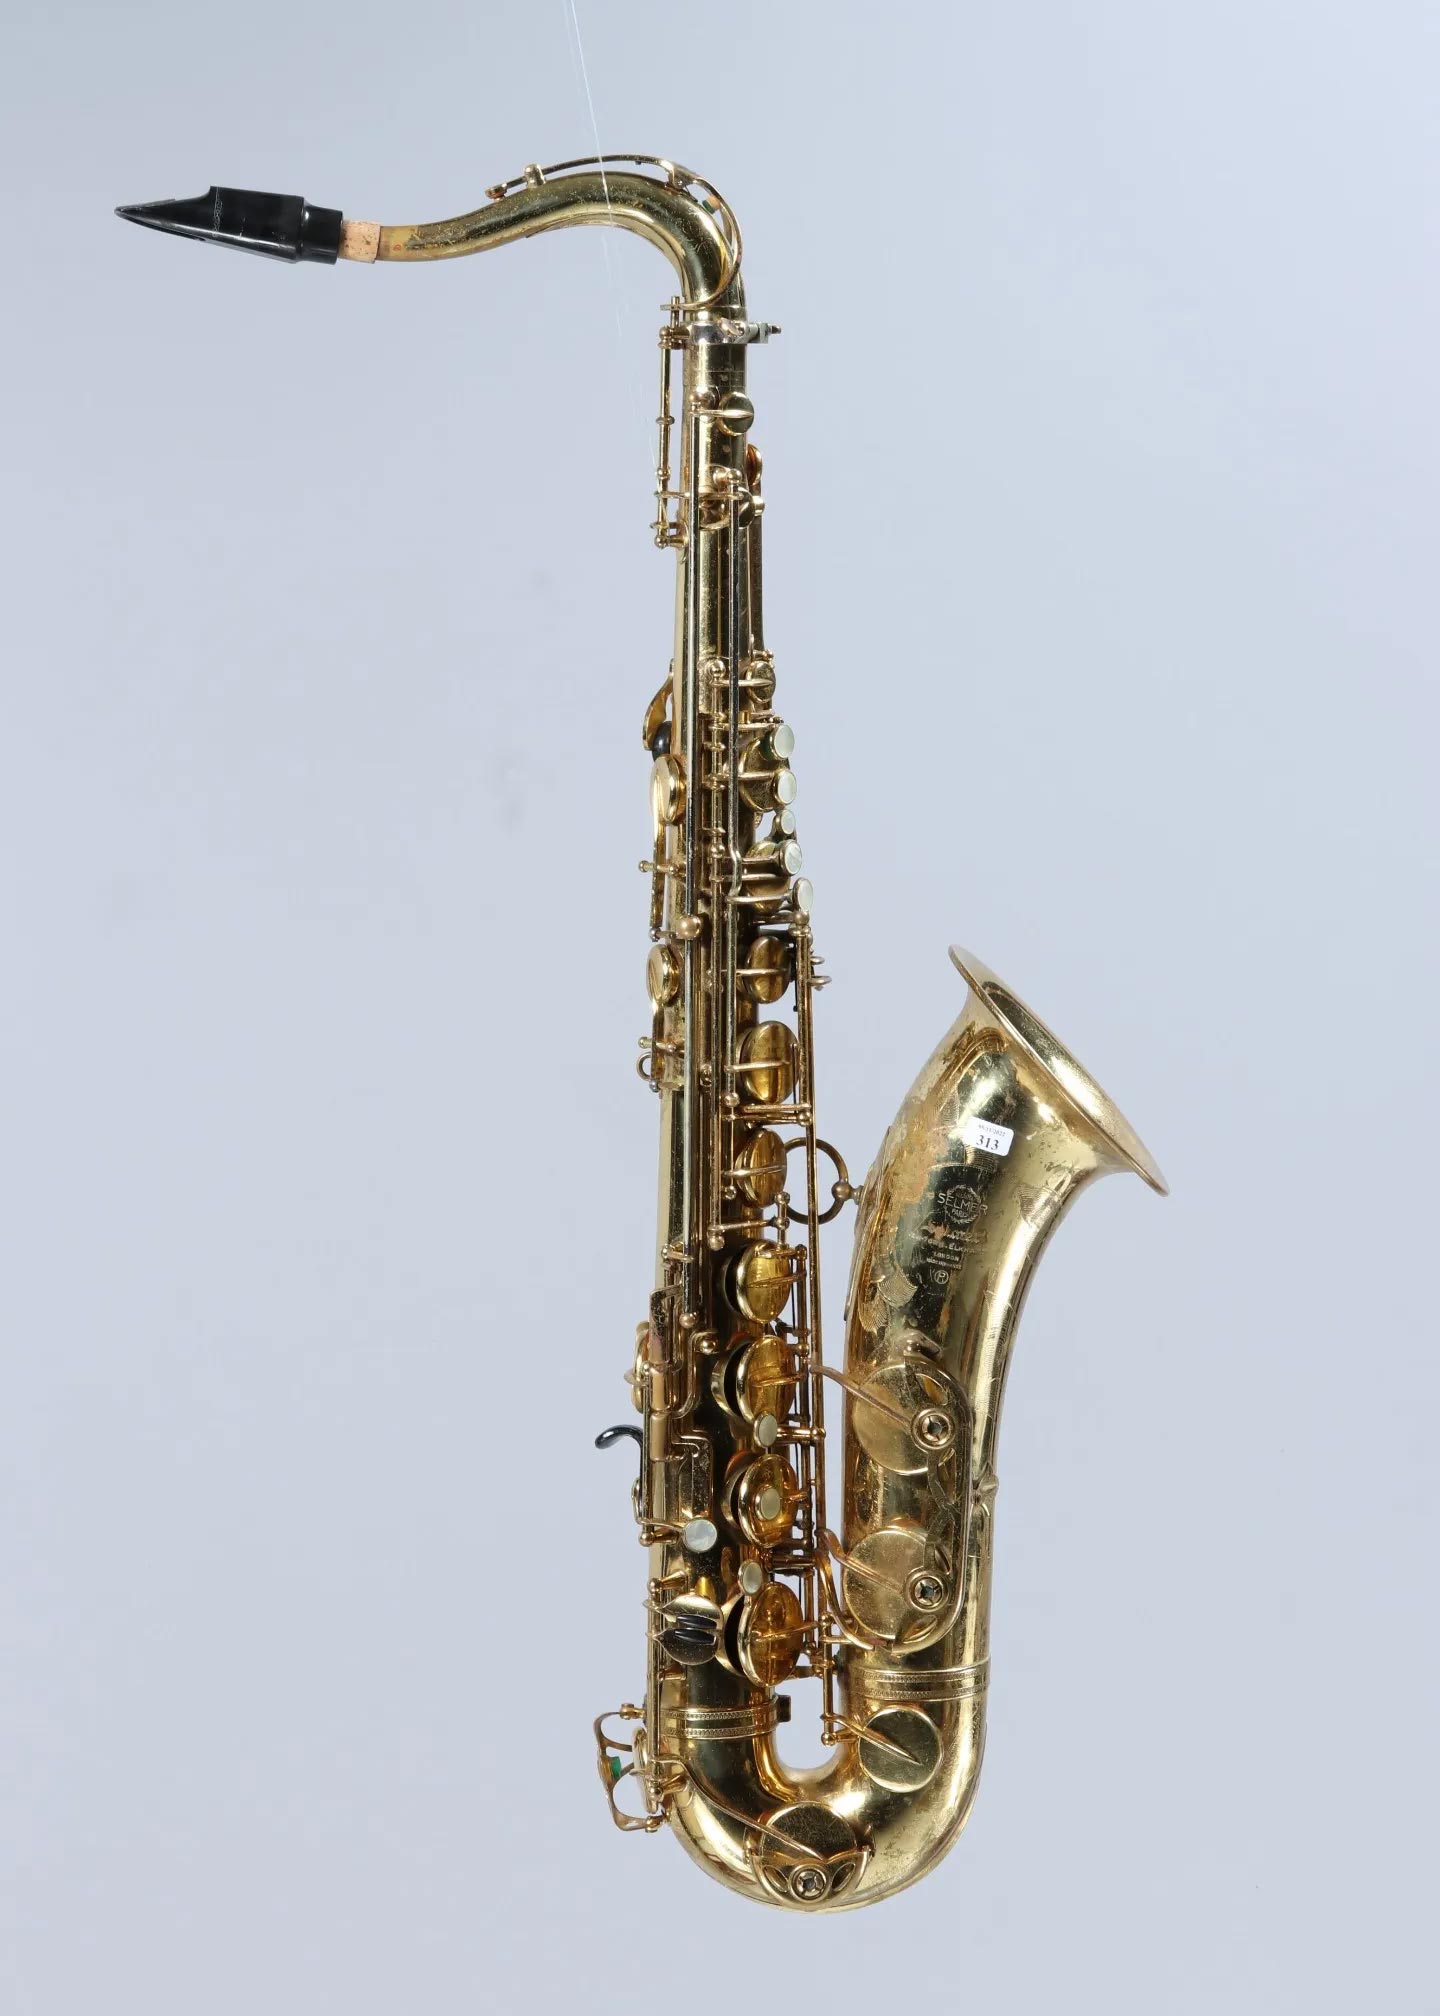 Saxophone ténor en laiton verni, clef de fa # aigu, de SELMER modèle Mark VI de 1964 Instrument mis en vente par Vichy Enchères le 5 novembre 2022 © C. Darbelet